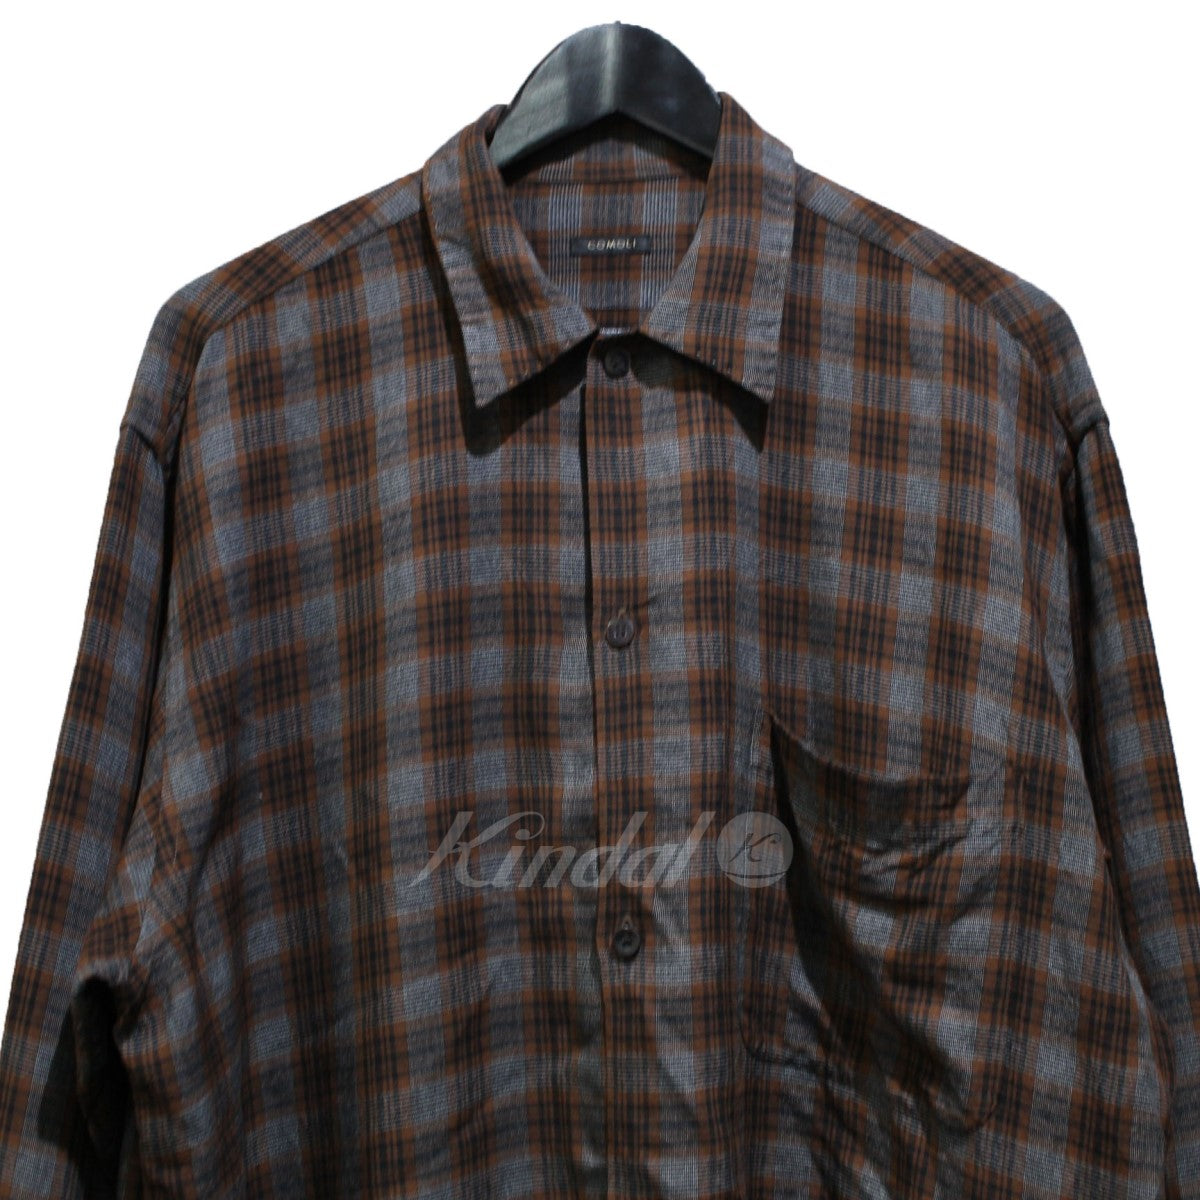 COMOLI(コモリ) 19SS レーヨンオープンカラーシャツ 長袖シャツ